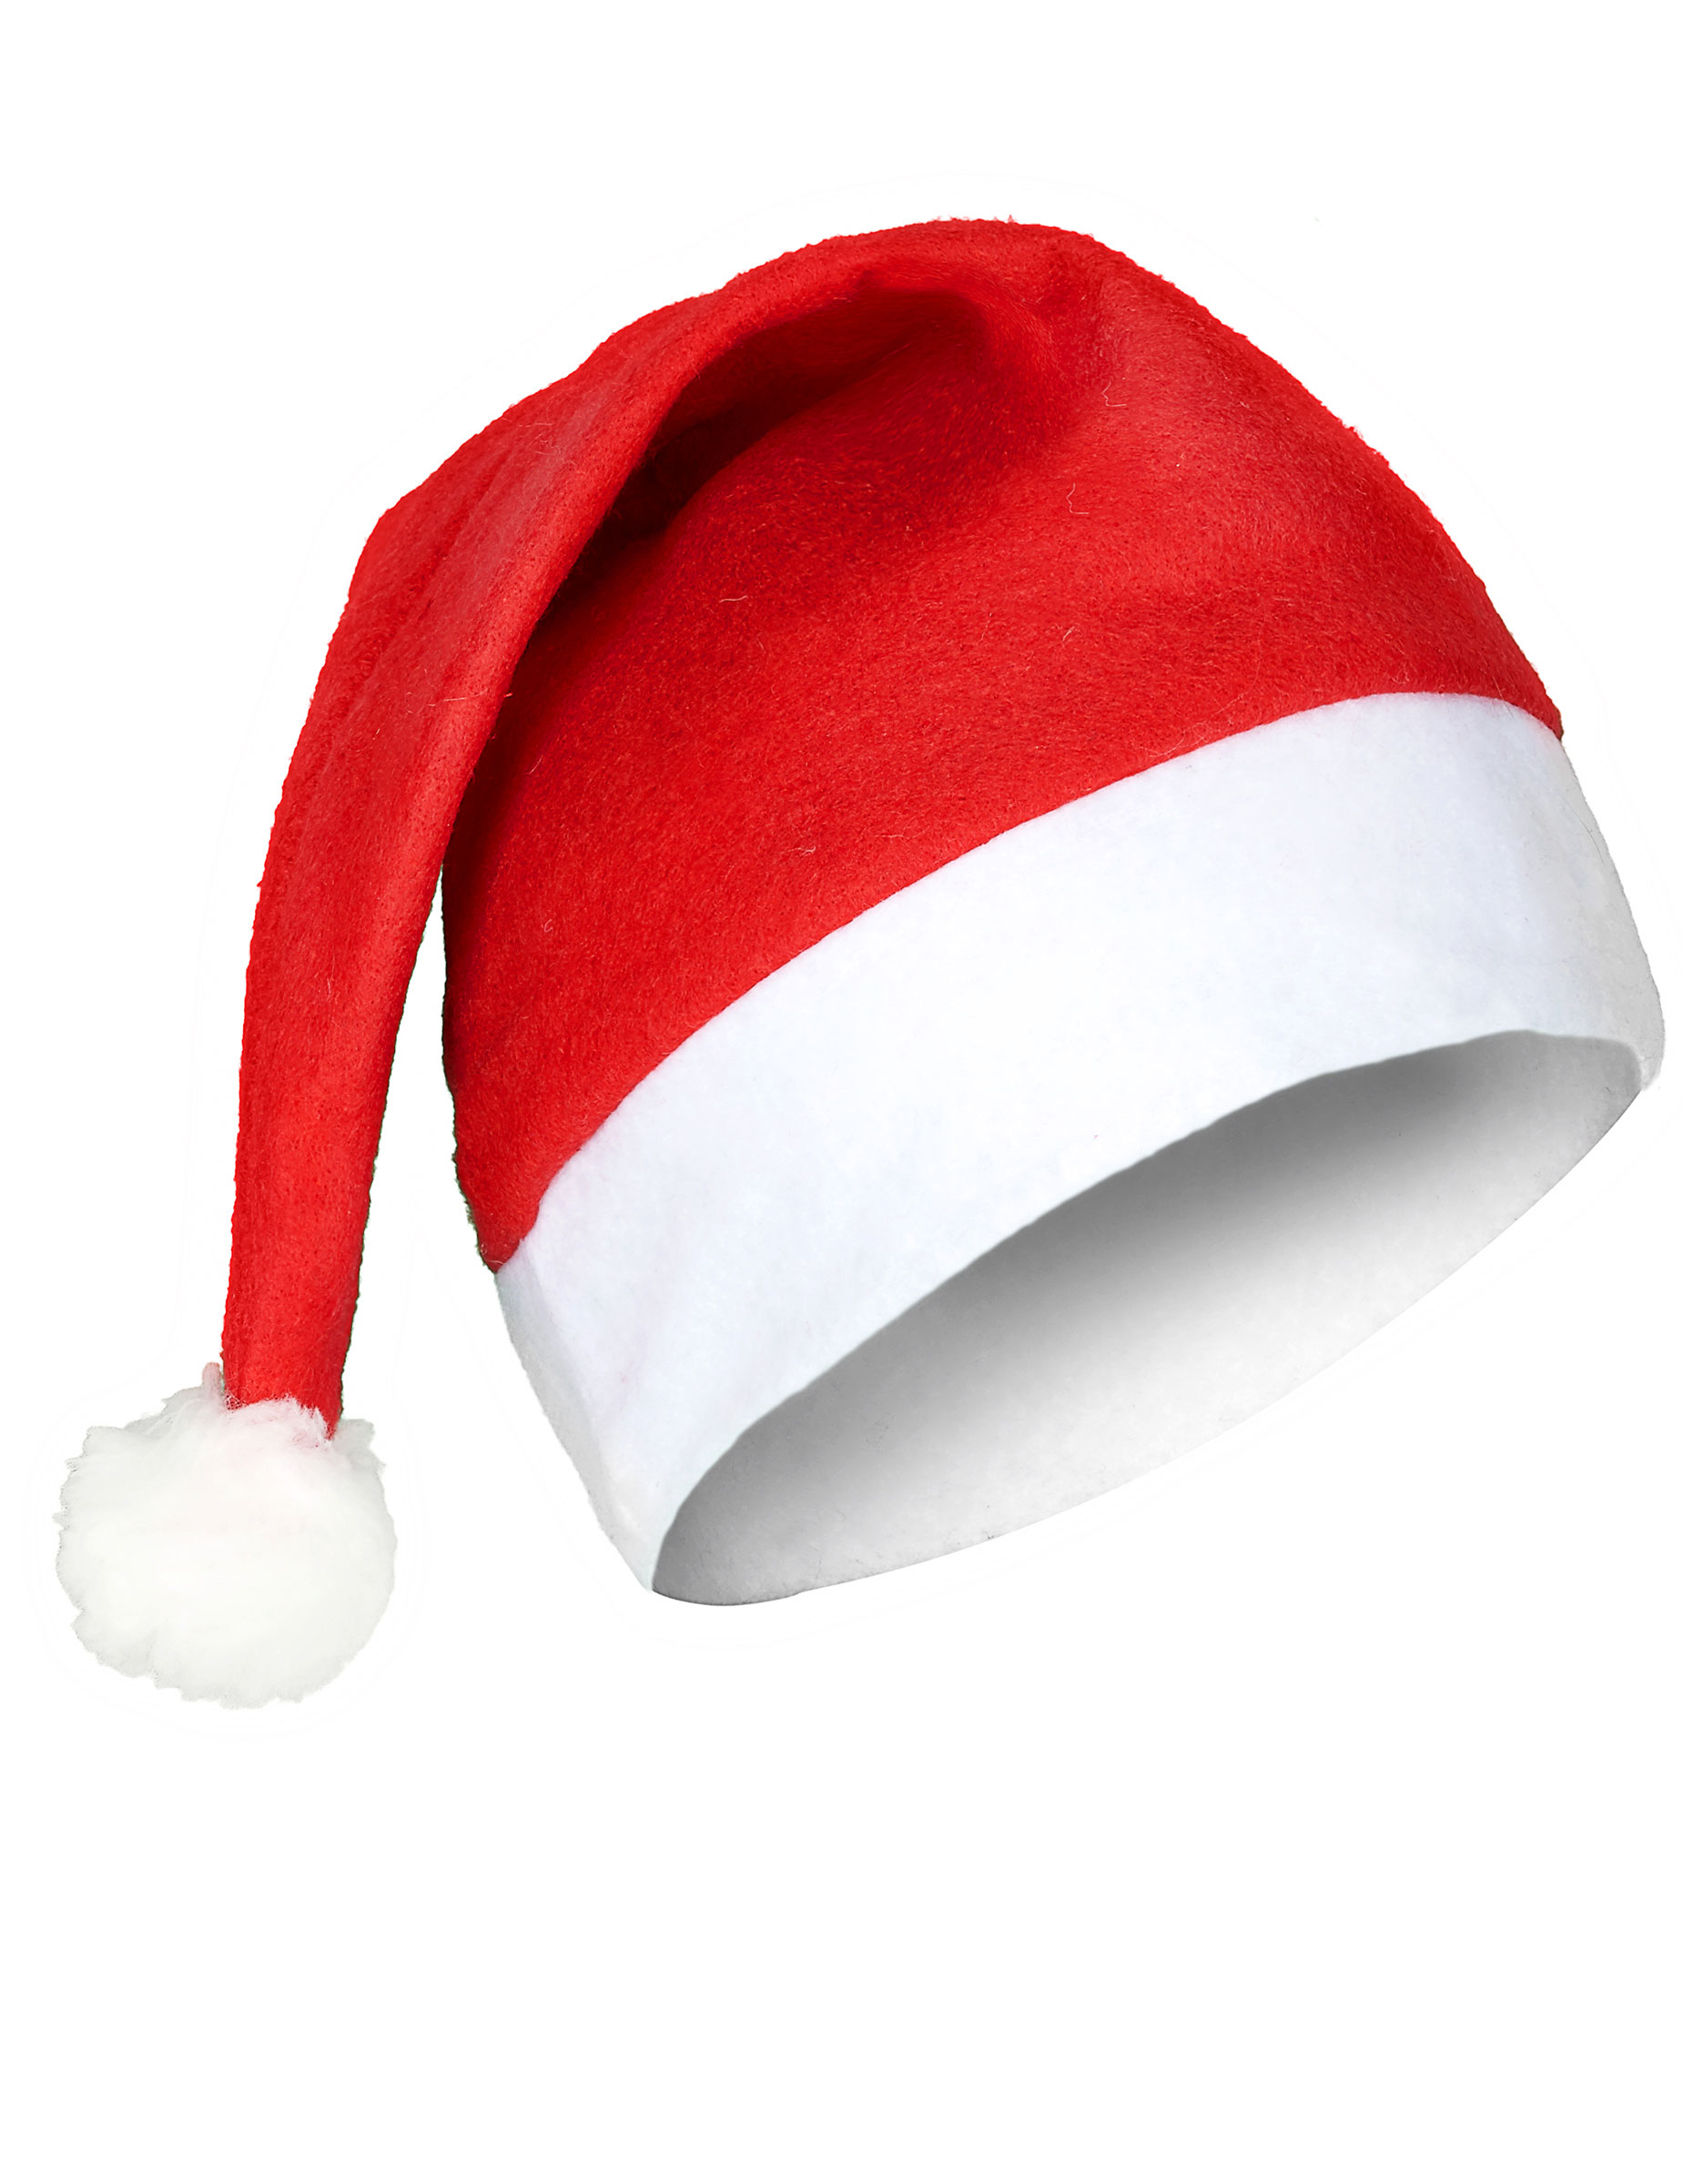 Nikolausmütze Weihnachten mit Bommel rot-weiss von KARNEVAL-MEGASTORE